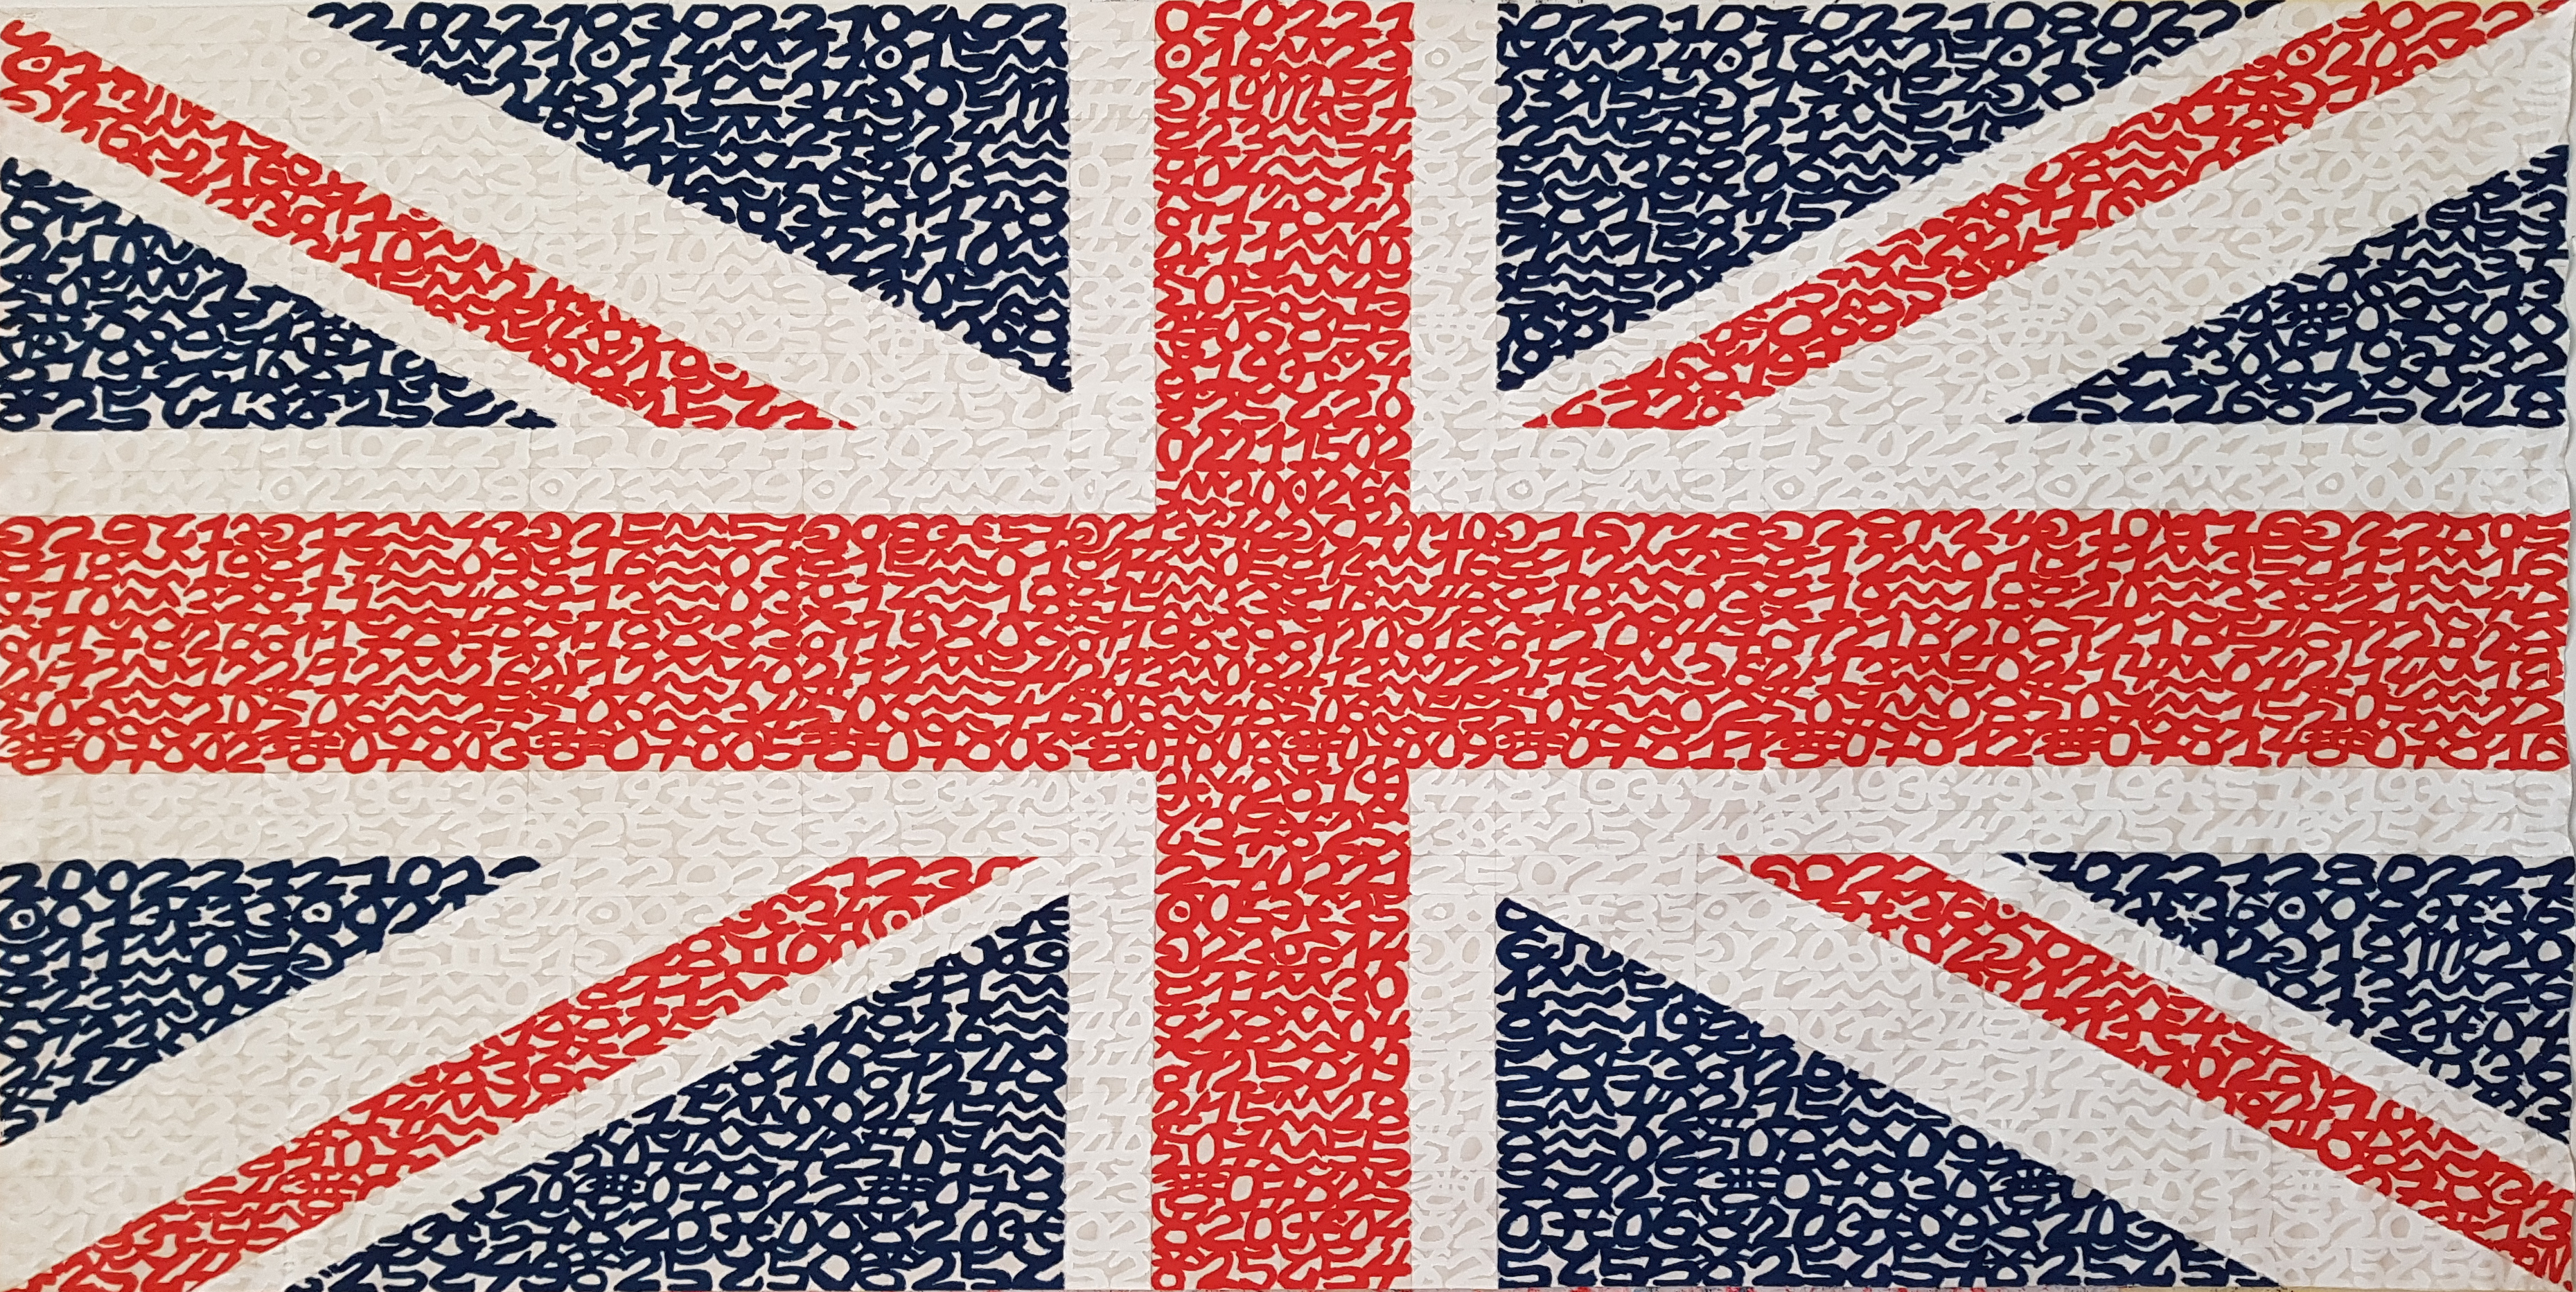 Drapeau du Royaume-Uni, éphéméride du mois de Février 2021, 2/12, acrylique sur tissu libre, 80 x 160 cm. Chaque mois de l